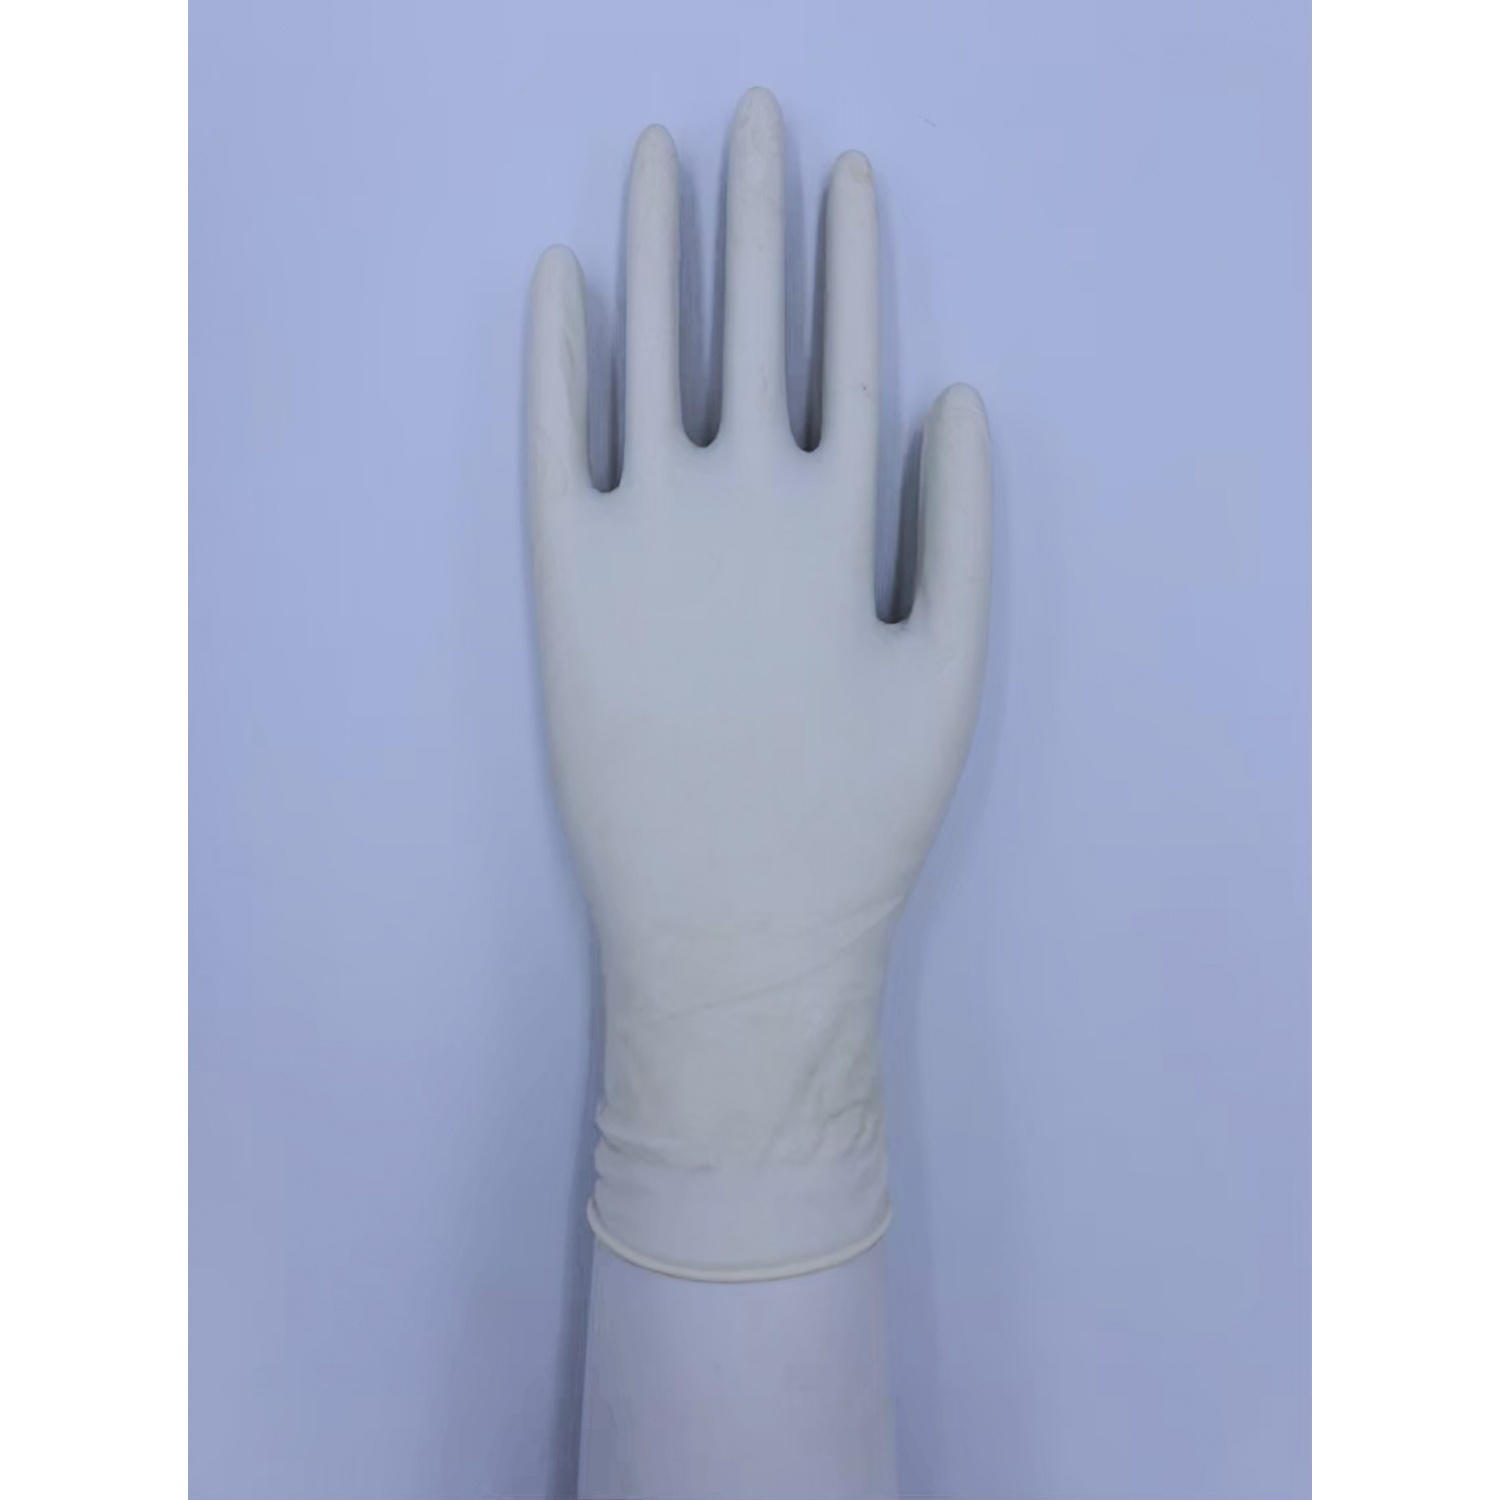 Master Glove ถุงมือยางธรรมชาติ 5.5g ไม่มีแป้ง Size M (แพ็ค10ชิ้น) สีขาว